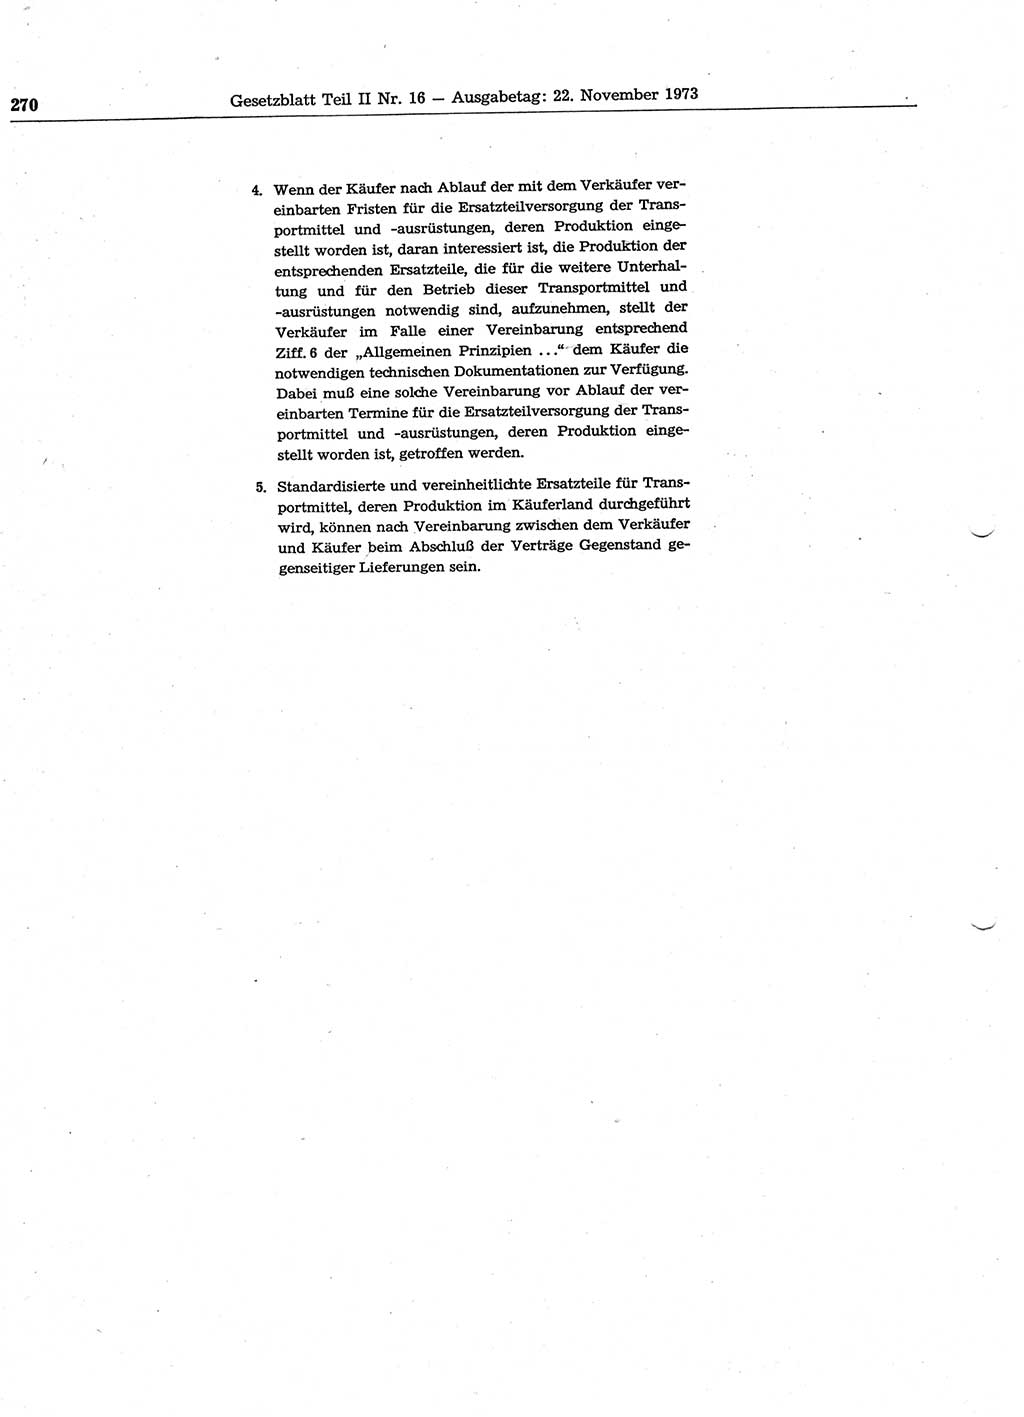 Gesetzblatt (GBl.) der Deutschen Demokratischen Republik (DDR) Teil ⅠⅠ 1973, Seite 270 (GBl. DDR ⅠⅠ 1973, S. 270)